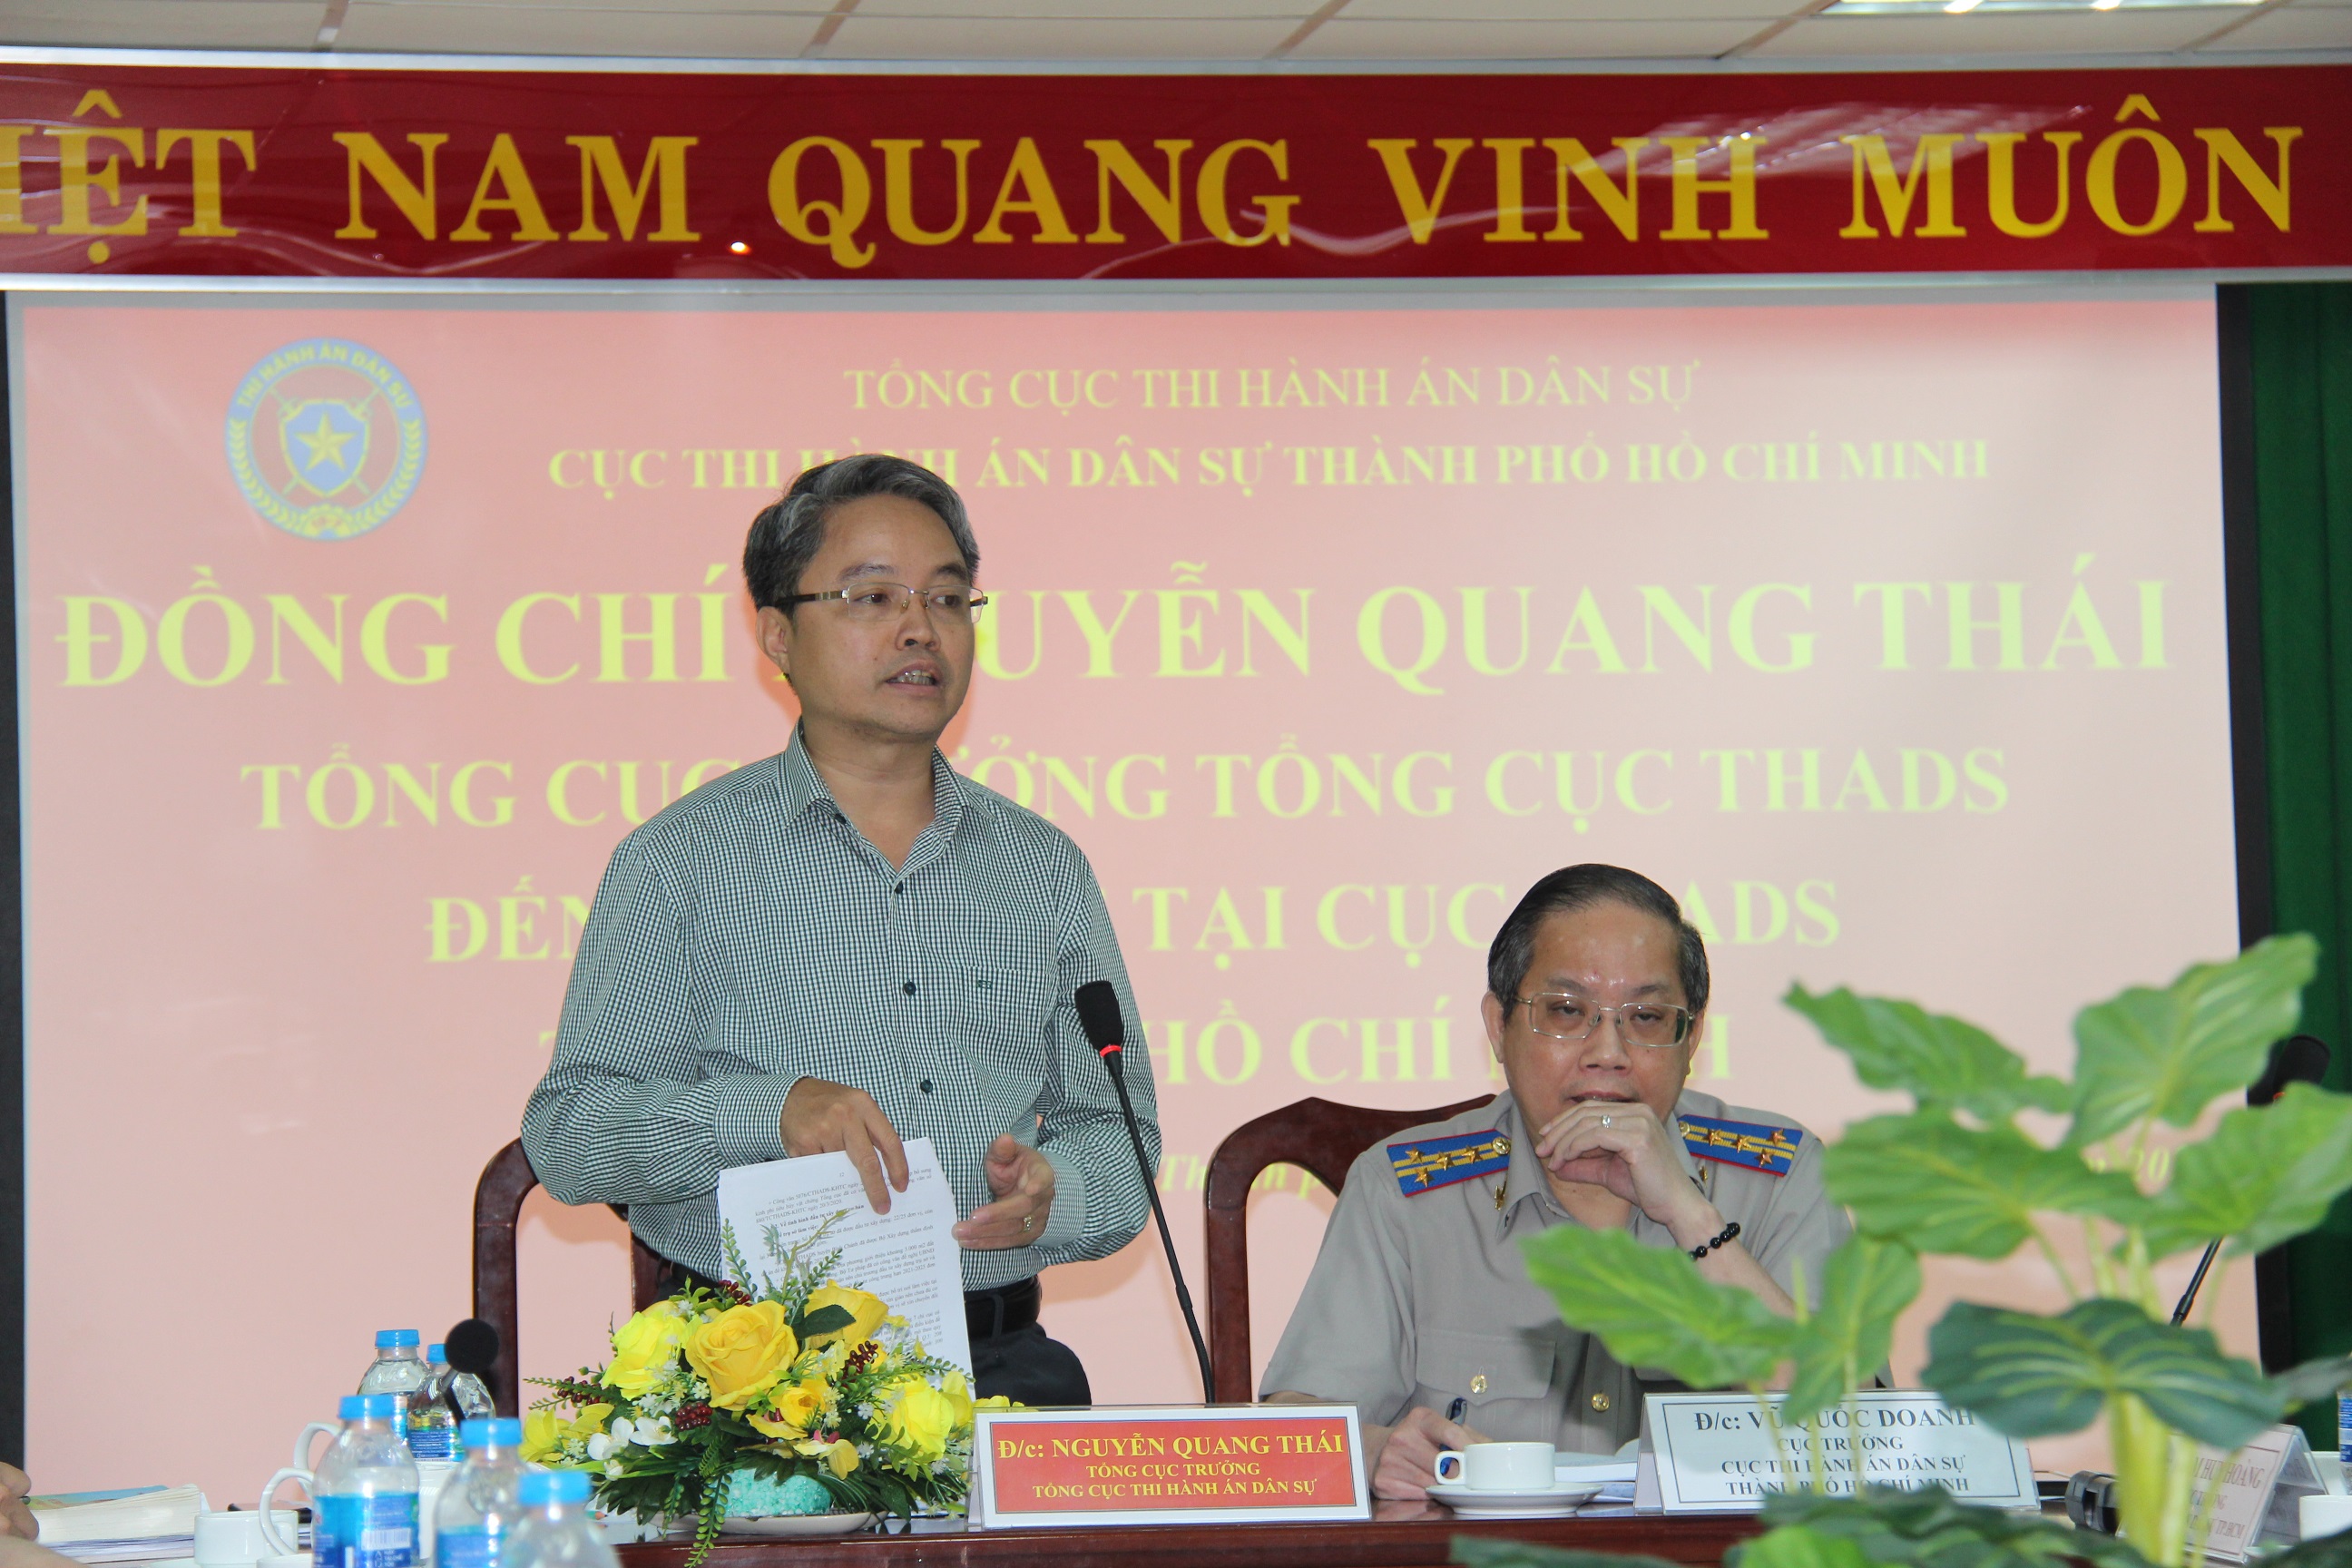 Tổng Cục trưởng Nguyễn Quang Thái làm việc  với Cục Thi hành án dân sự Thành phố Hồ Chí Minh